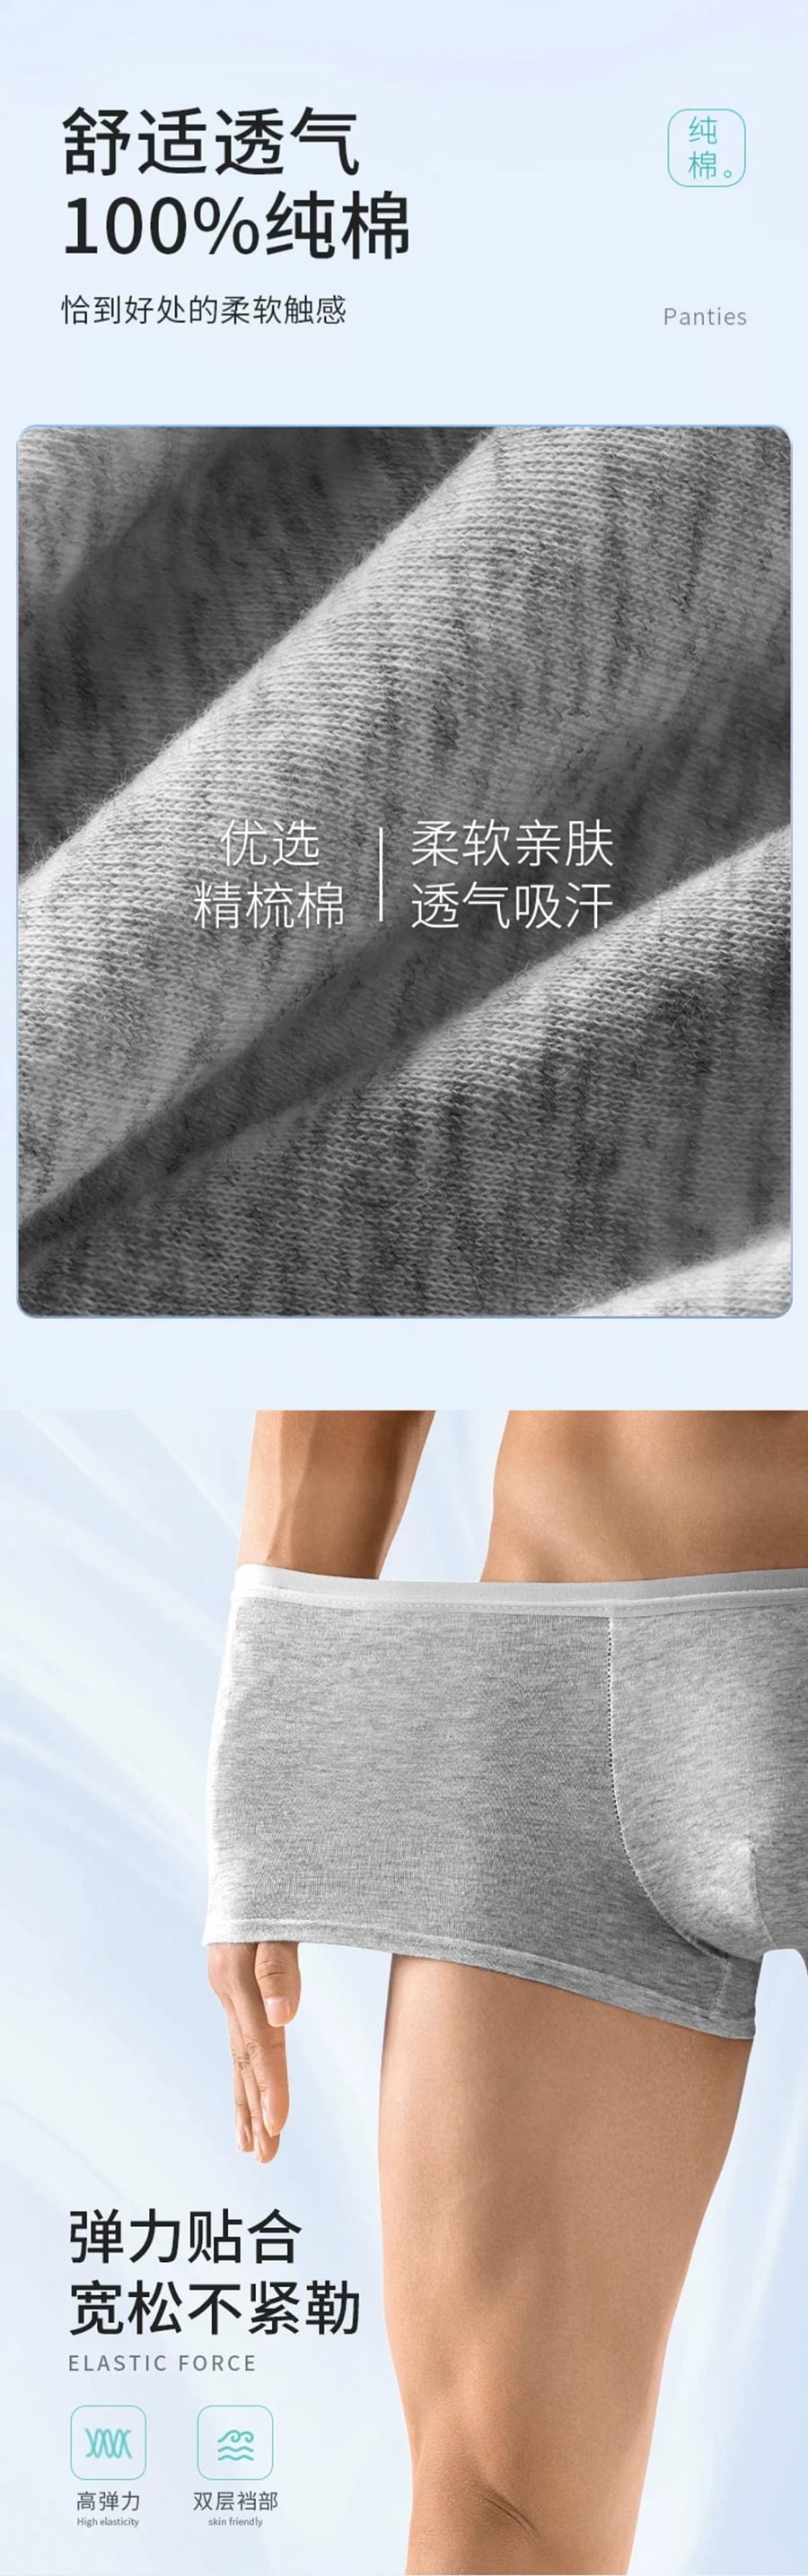 欧亿姿 方便舒适一次性男性内裤 灰色 XXL 3条装无需清洗 不仅仅是方便